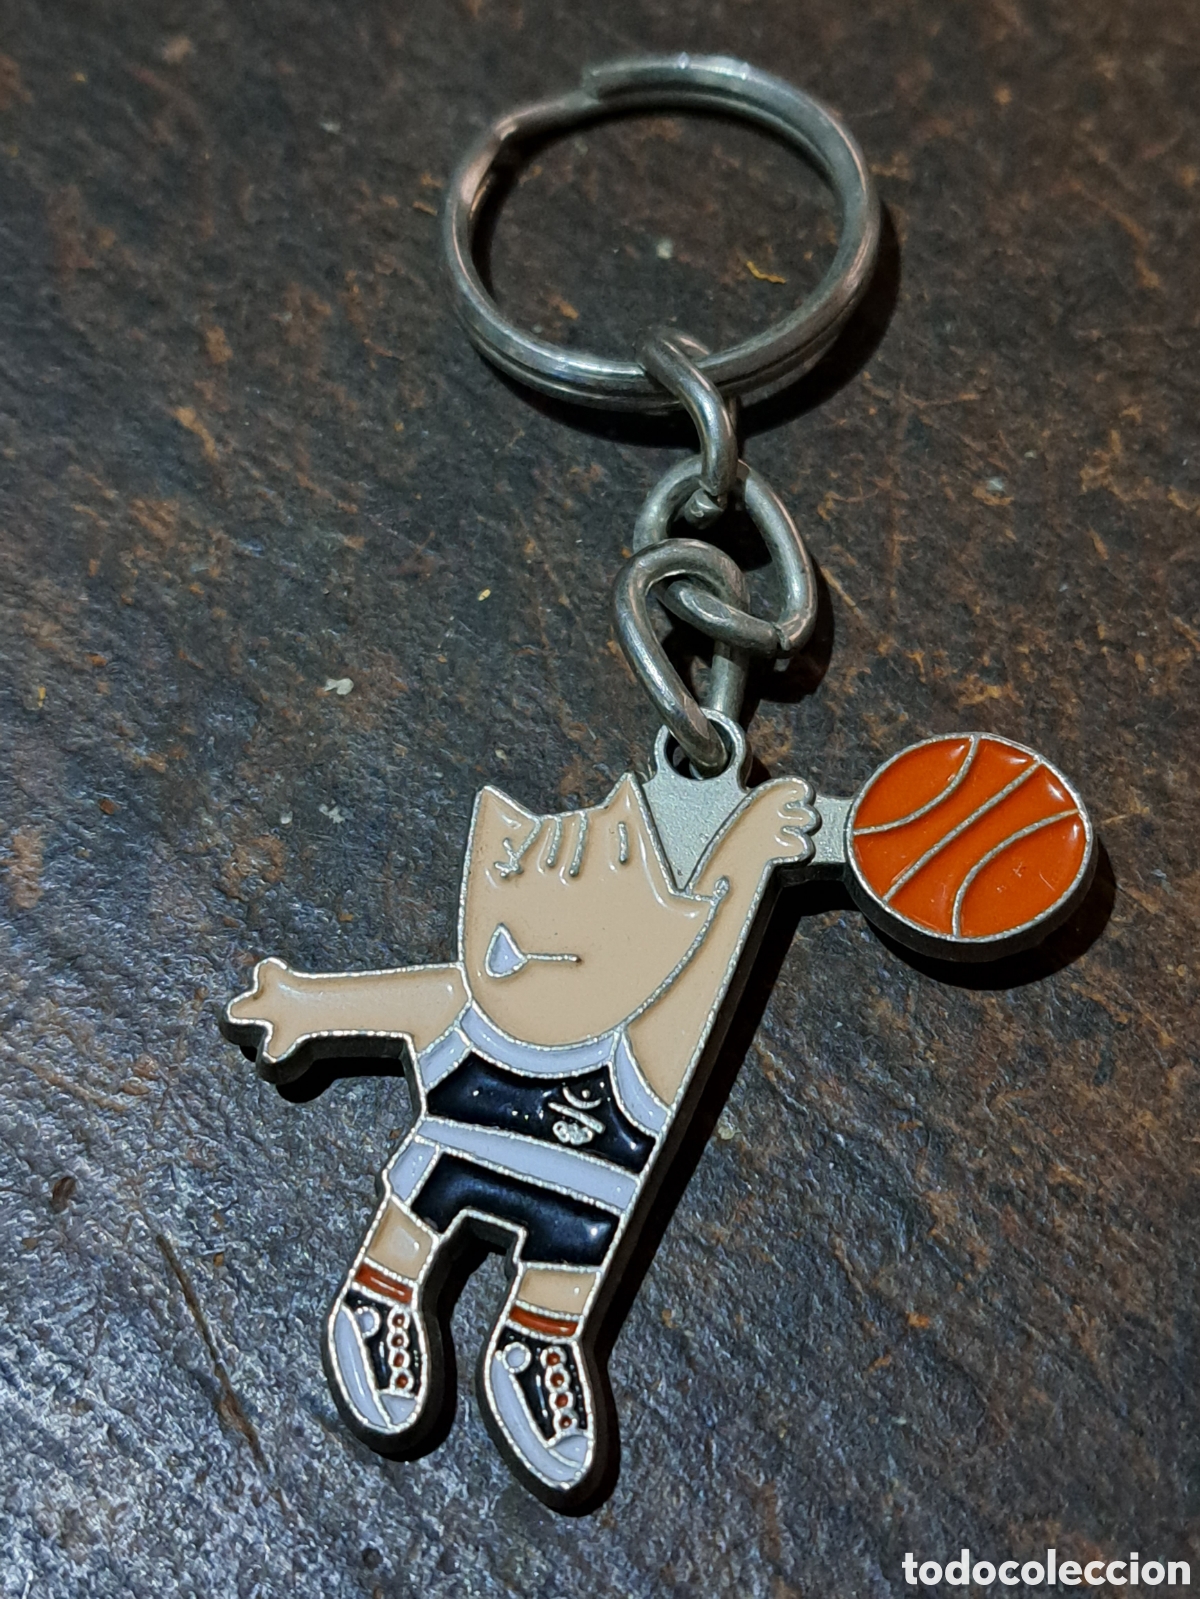 llavero cobi basquet juegos olimpicos barcelona - Buy Antique keyrings and  keychains on todocoleccion